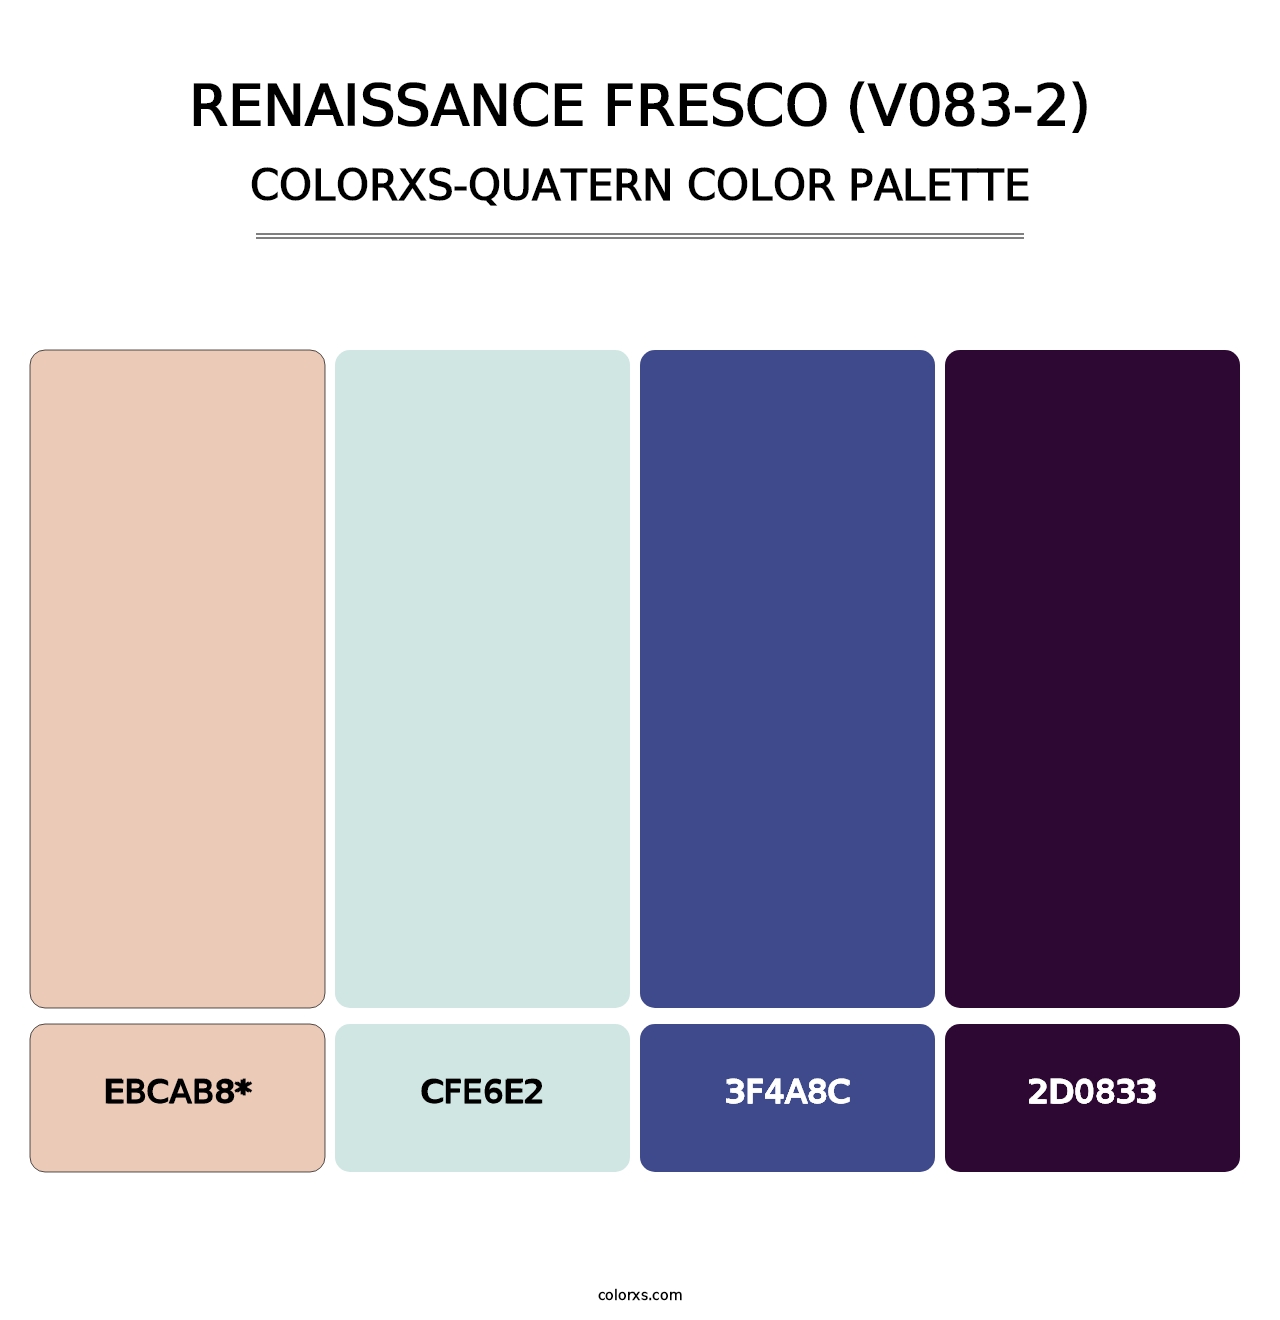 Renaissance Fresco (V083-2) - Colorxs Quatern Palette